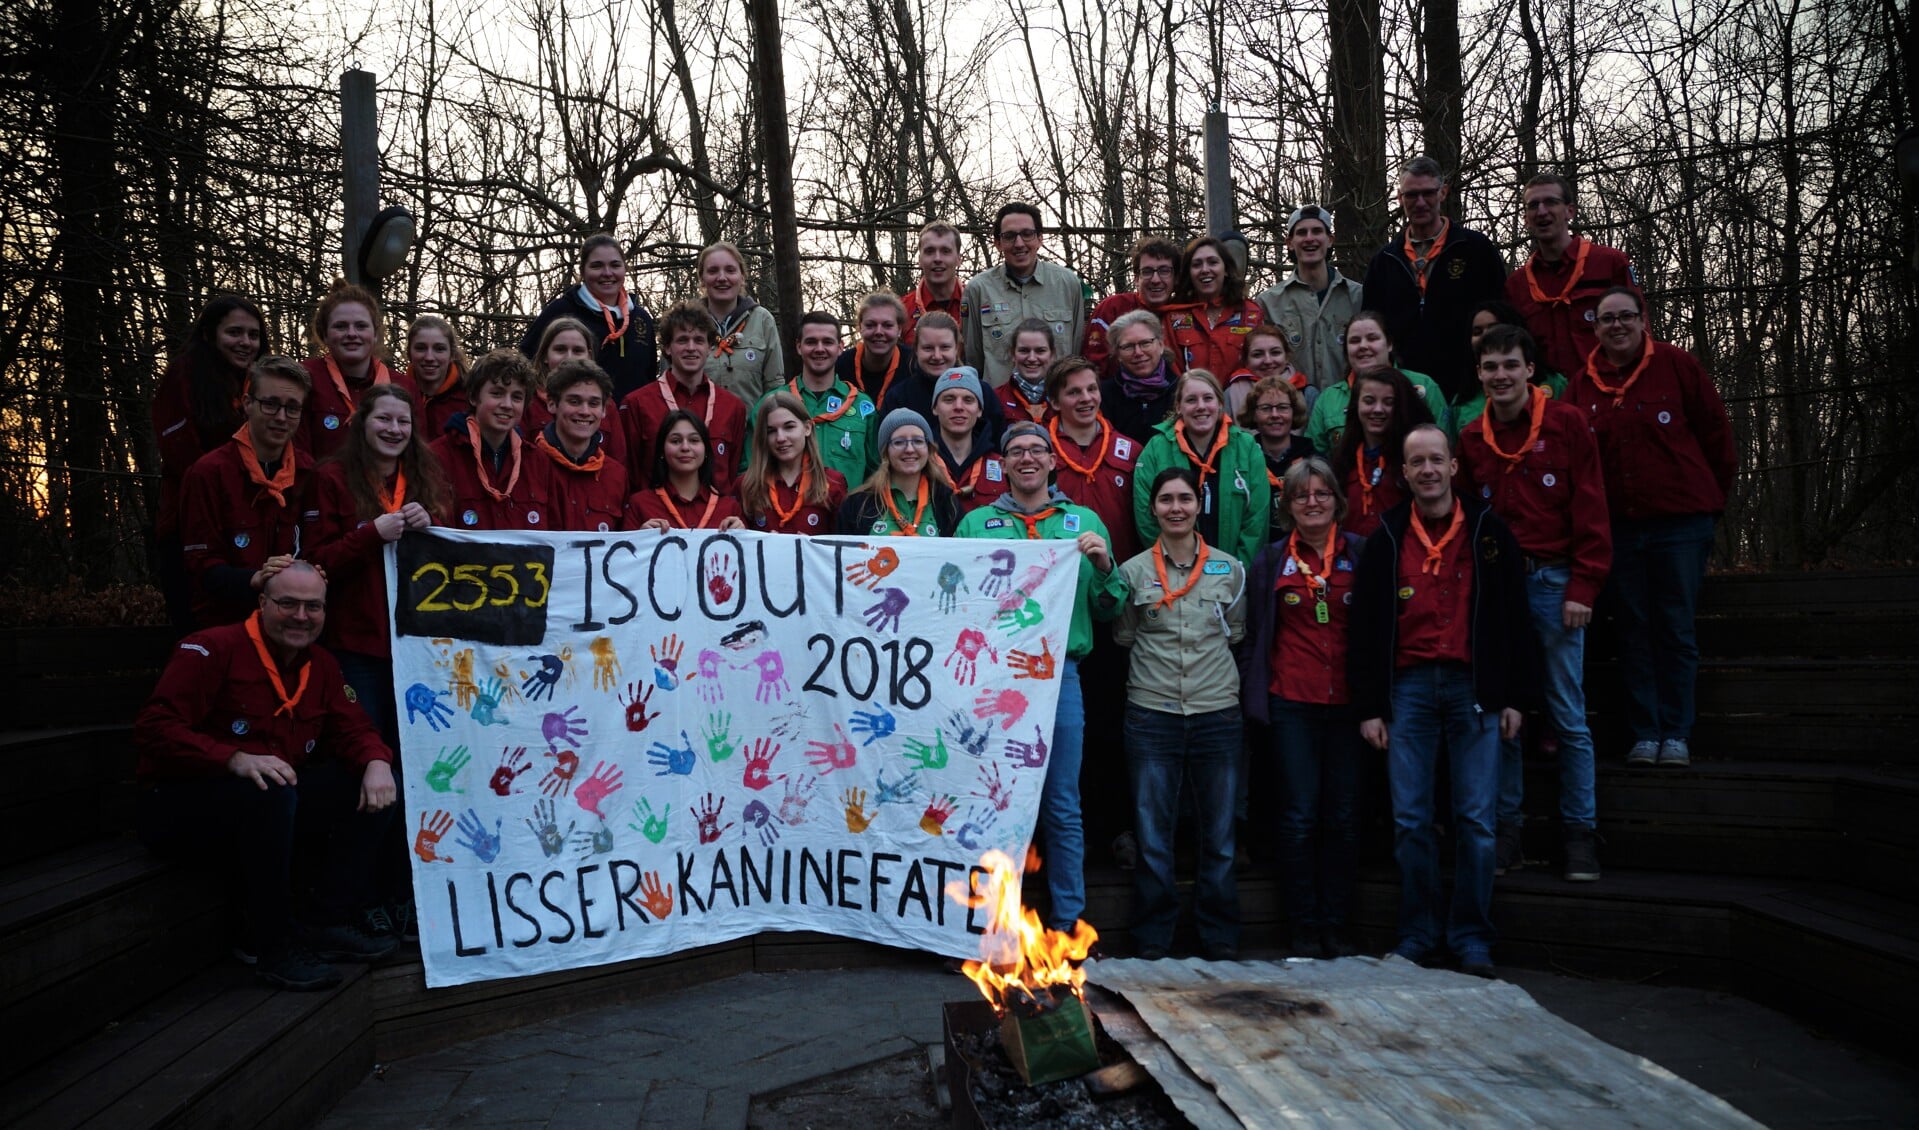 De deelnemers aan de iScout hadden een geslaagde zaterdagavond. 